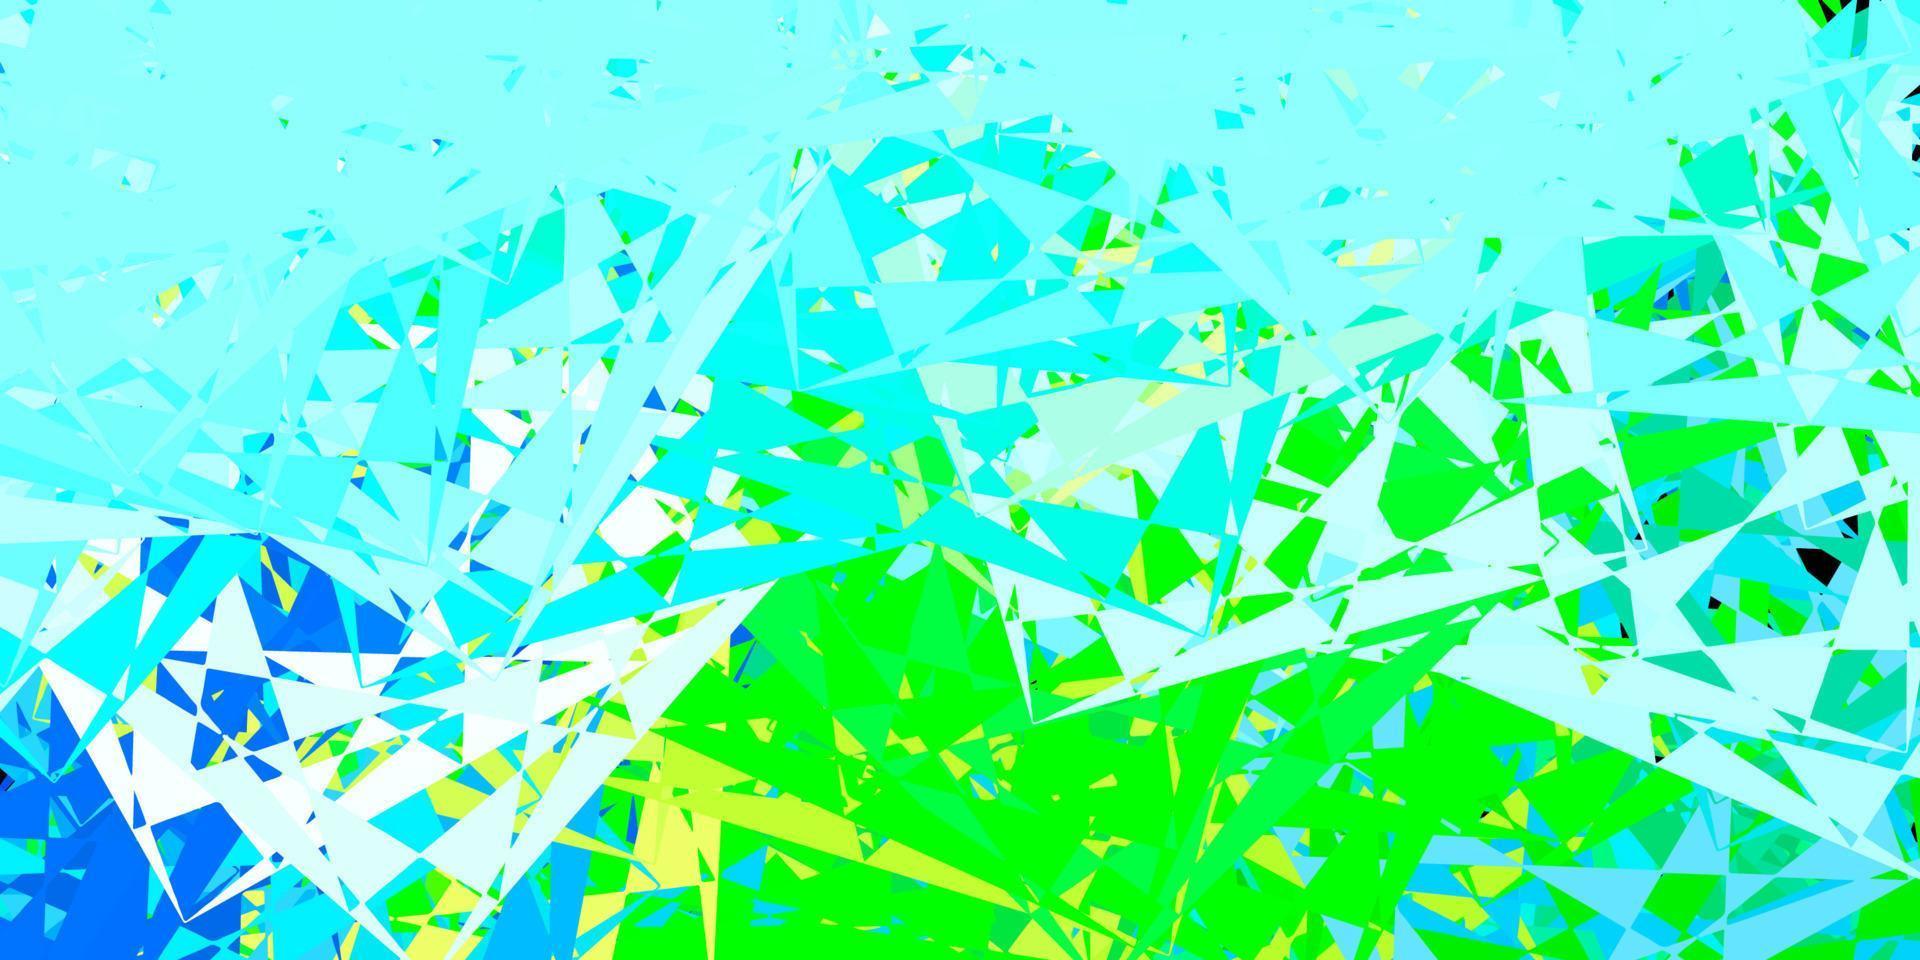 textura vector azul, verde claro com triângulos aleatórios.